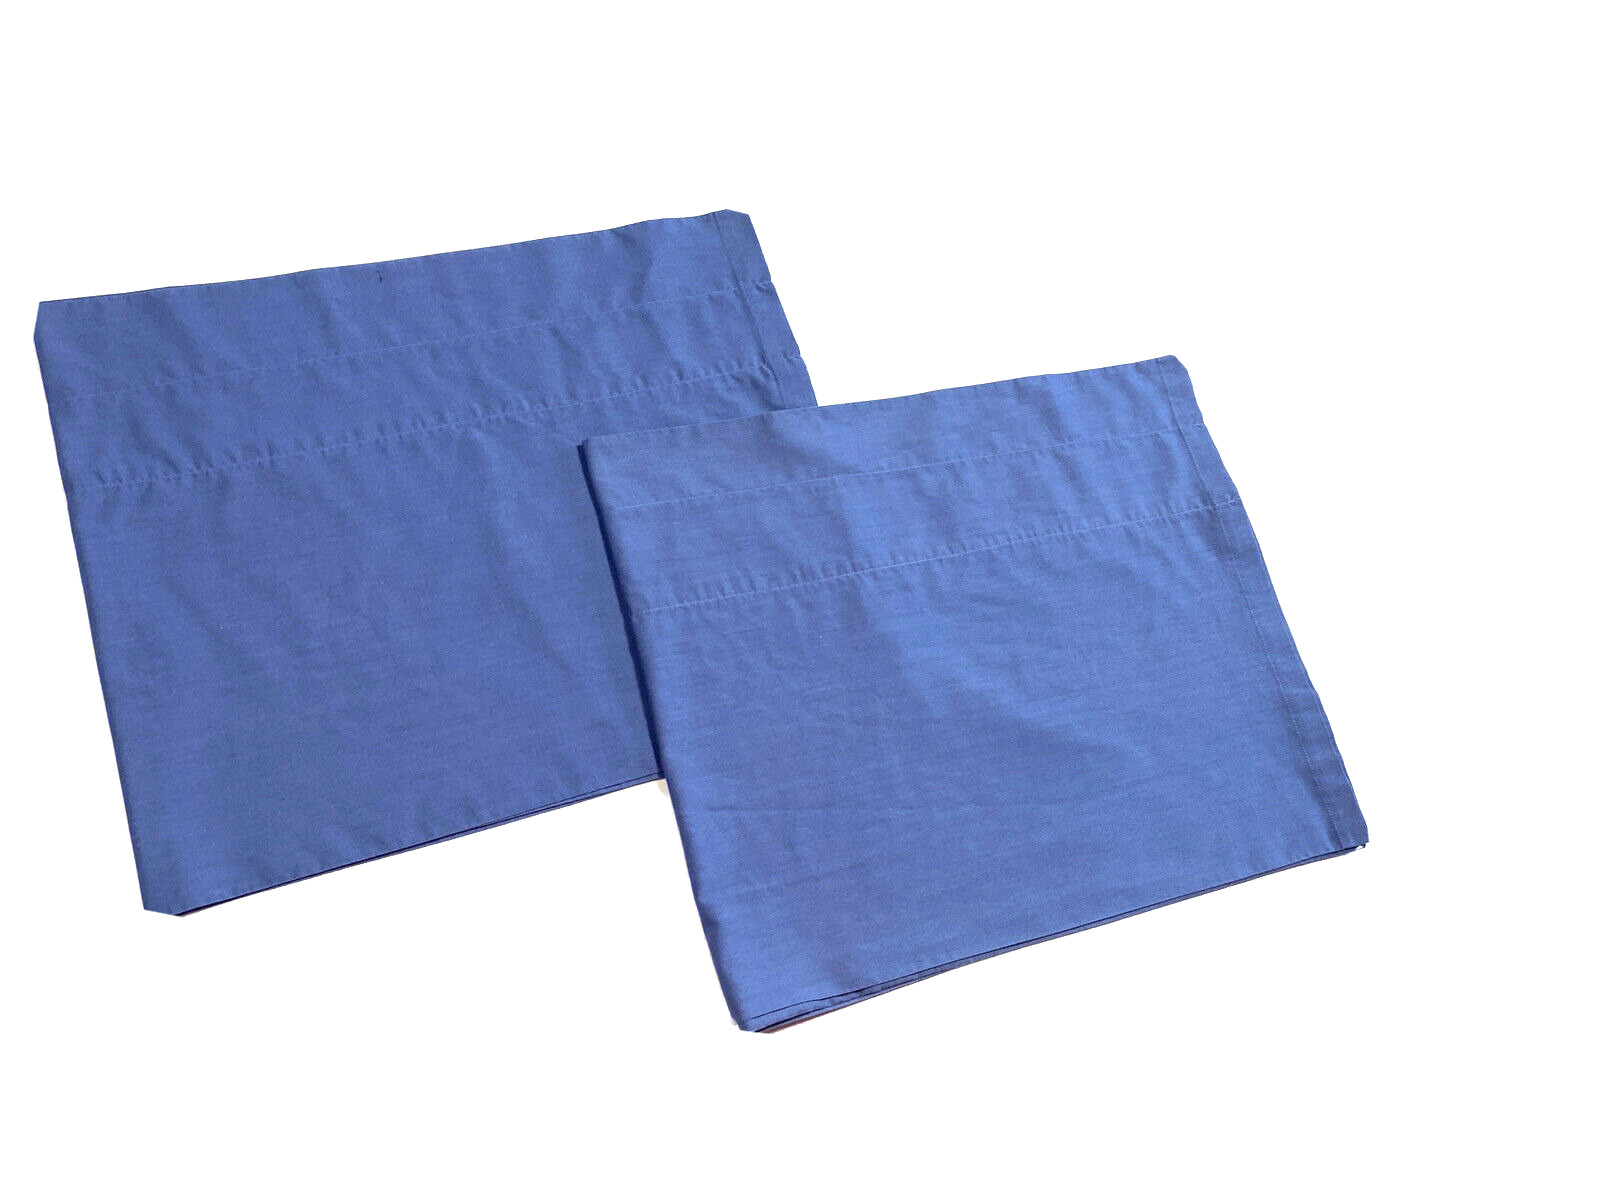 2 Vintage Blue Solid Cloth Valances Short Curtains Pair Cotton Window Treatments